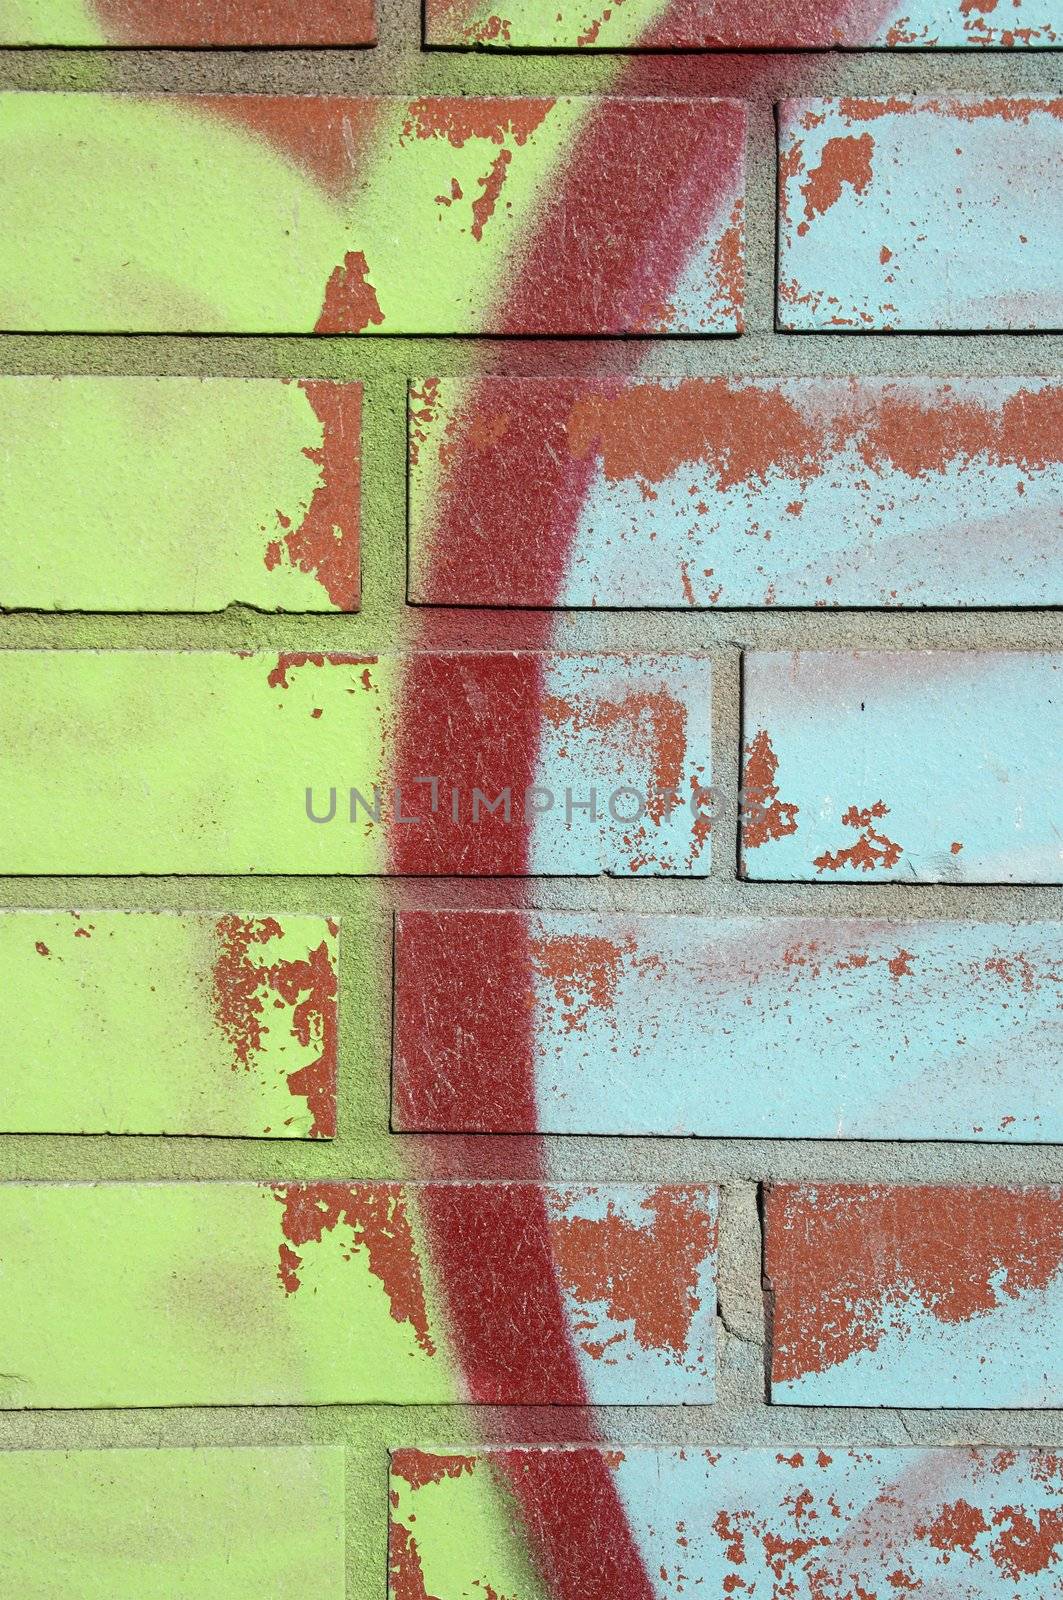 Graffiti, brick and peeling paint background